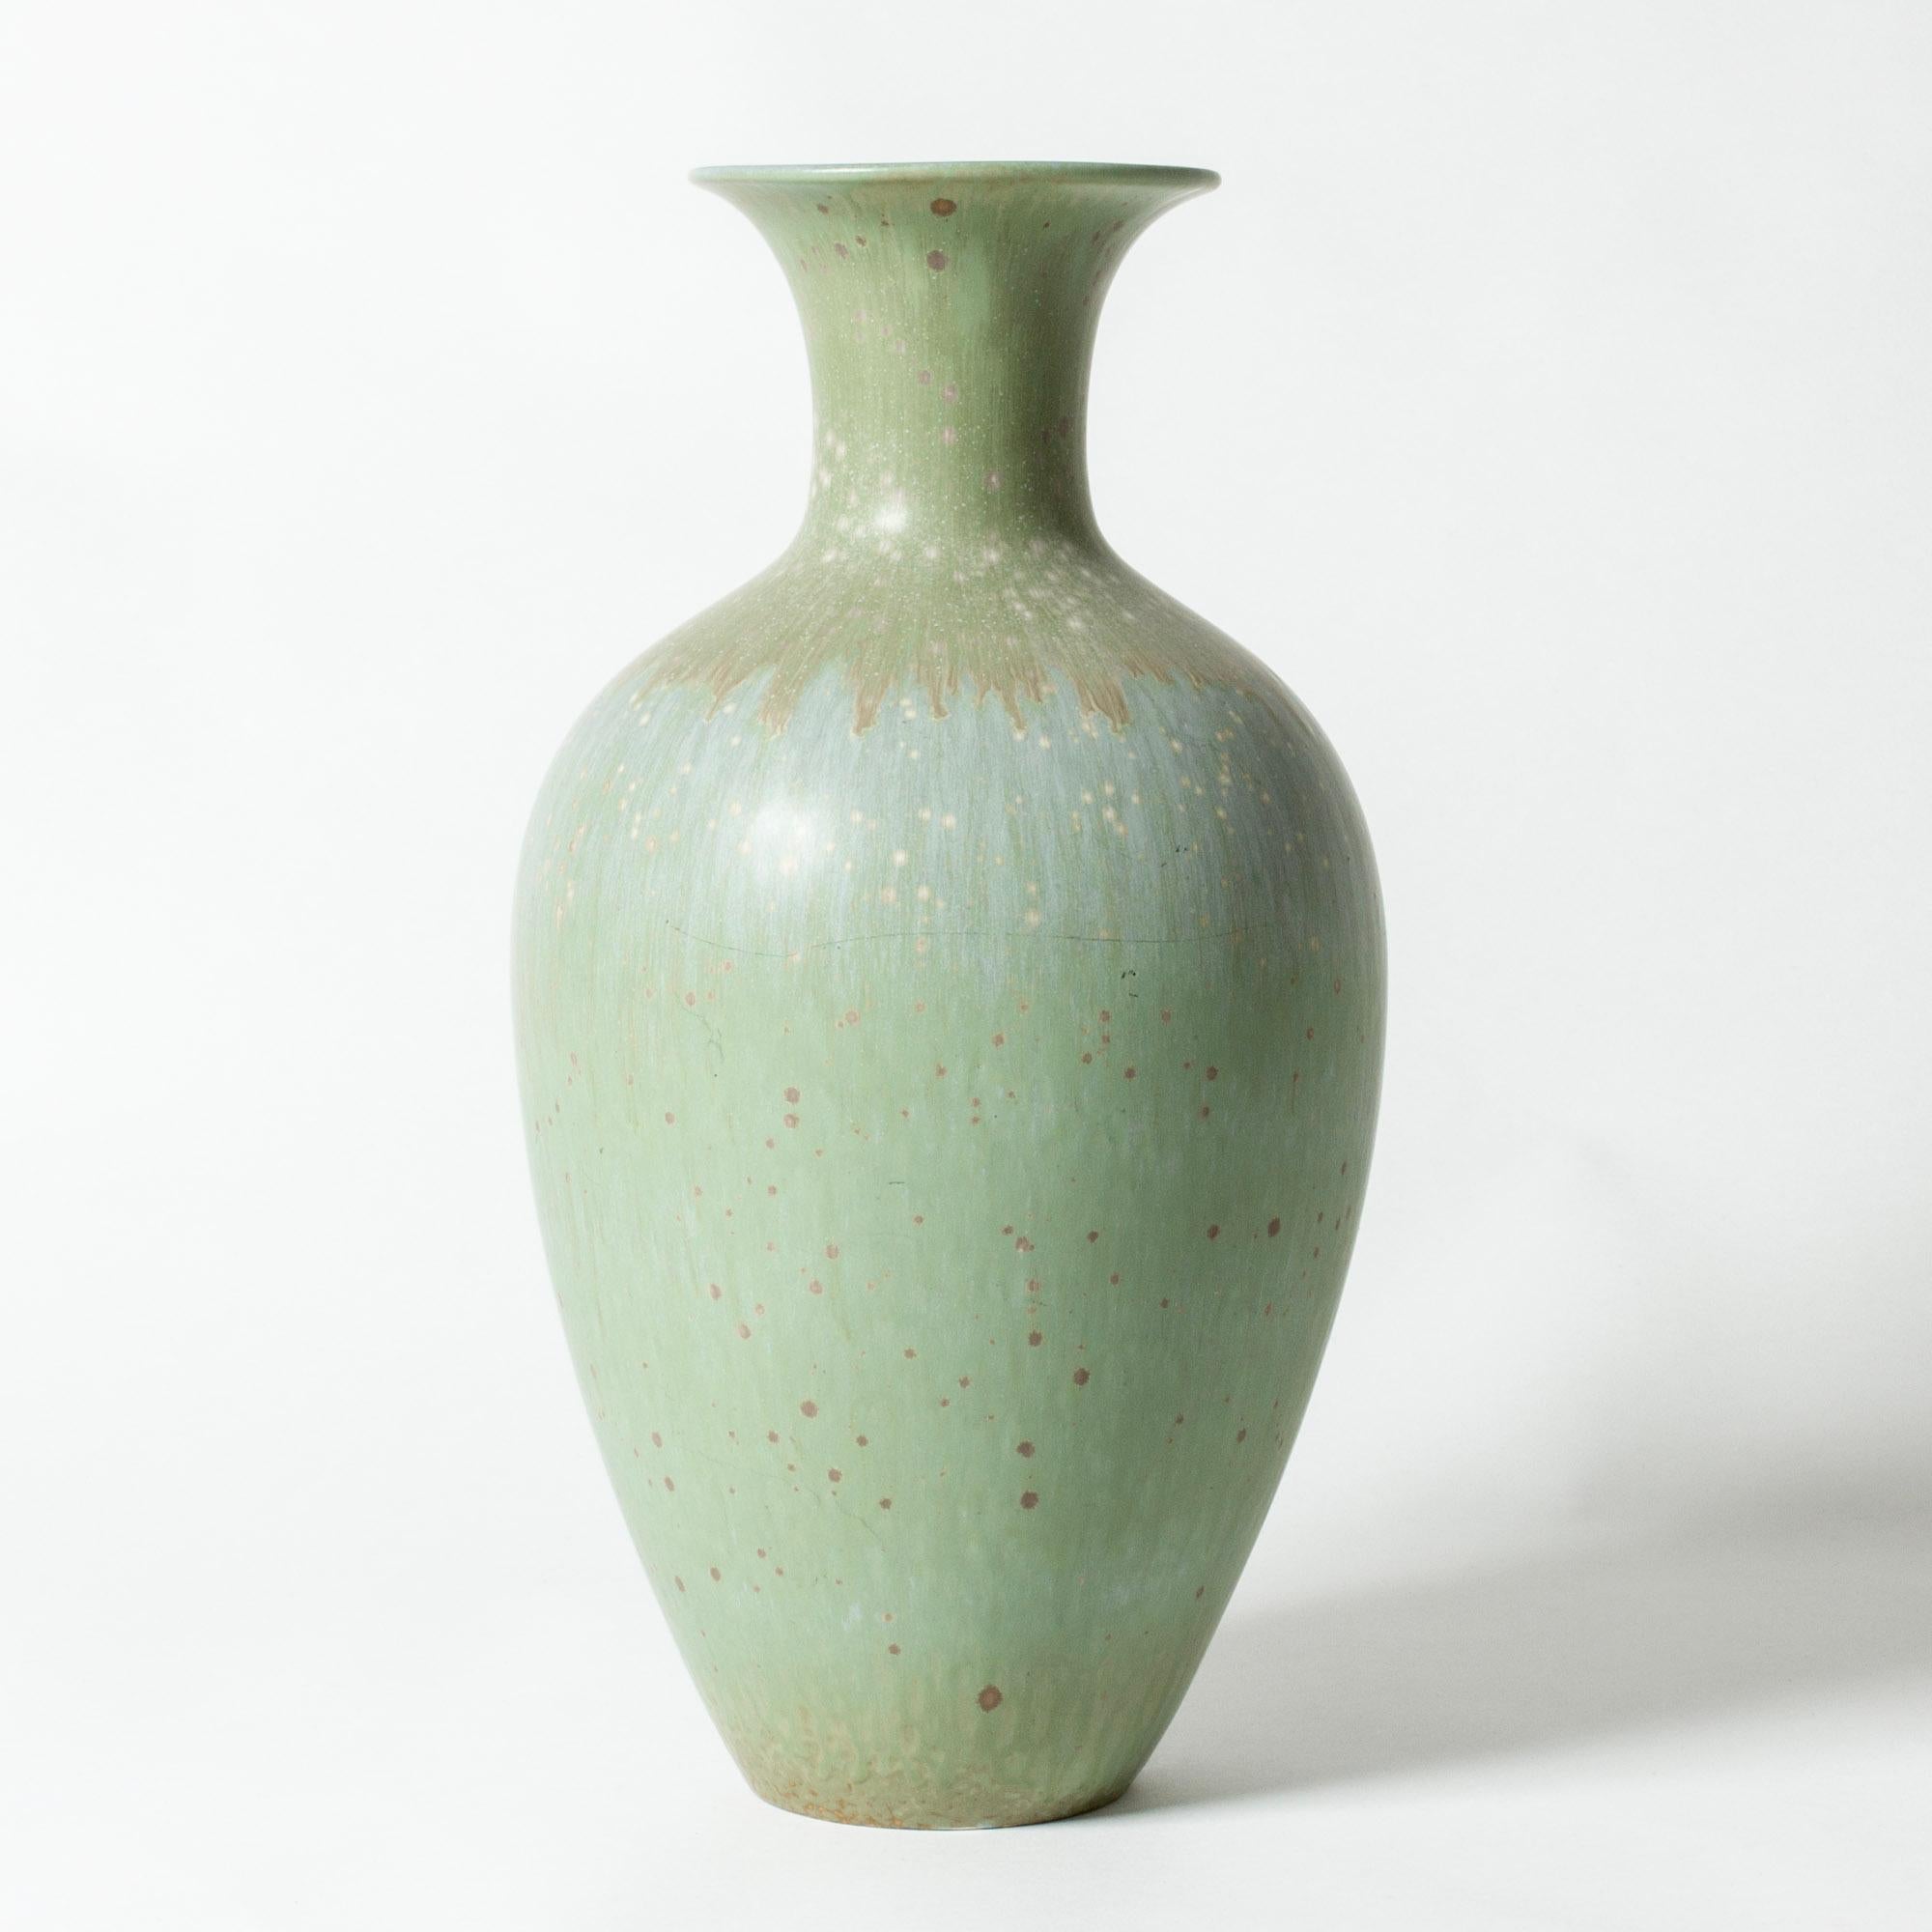 Grand vase en grès de Gunnar Nylund de forme classique. Belle glaçure dans une nuance céladon pâle.